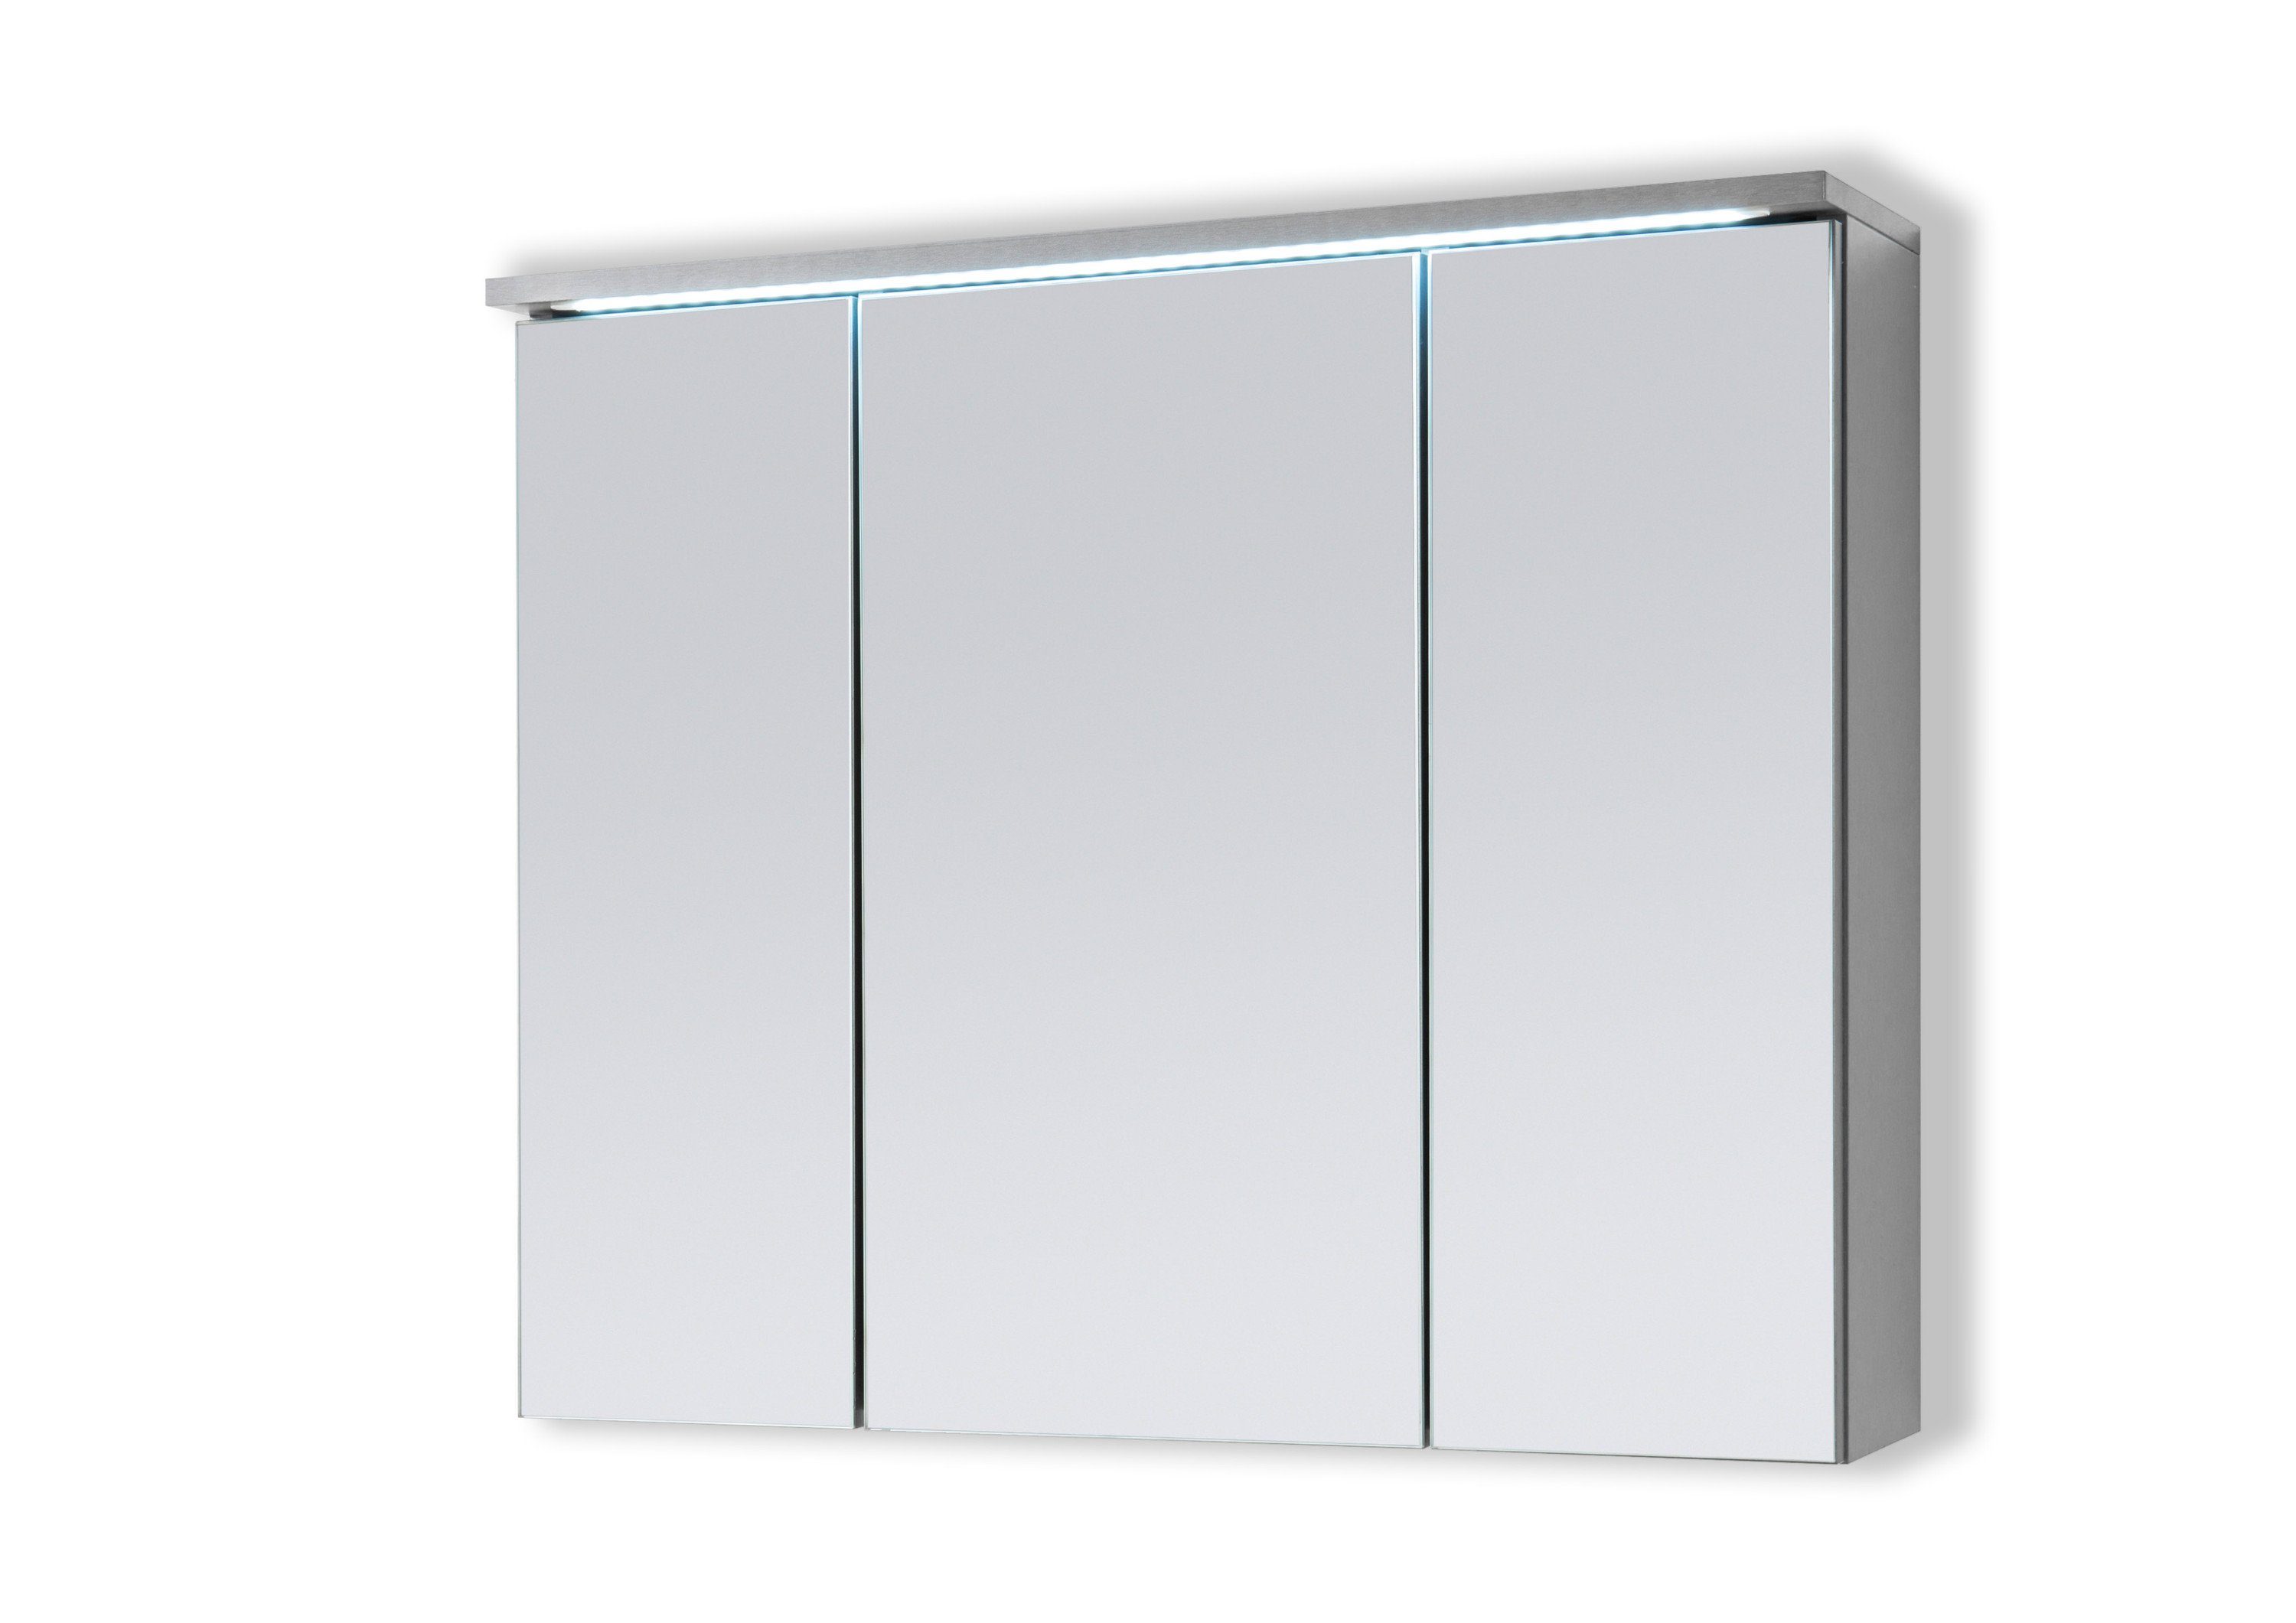 Aileenstore Spiegelschrank DUO Breite 80 cm, Schalter-/Steckdosenbox, LED- Beleuchtung, MONTAGE:Einfache Montage dank der mitgelieferten Anleitung